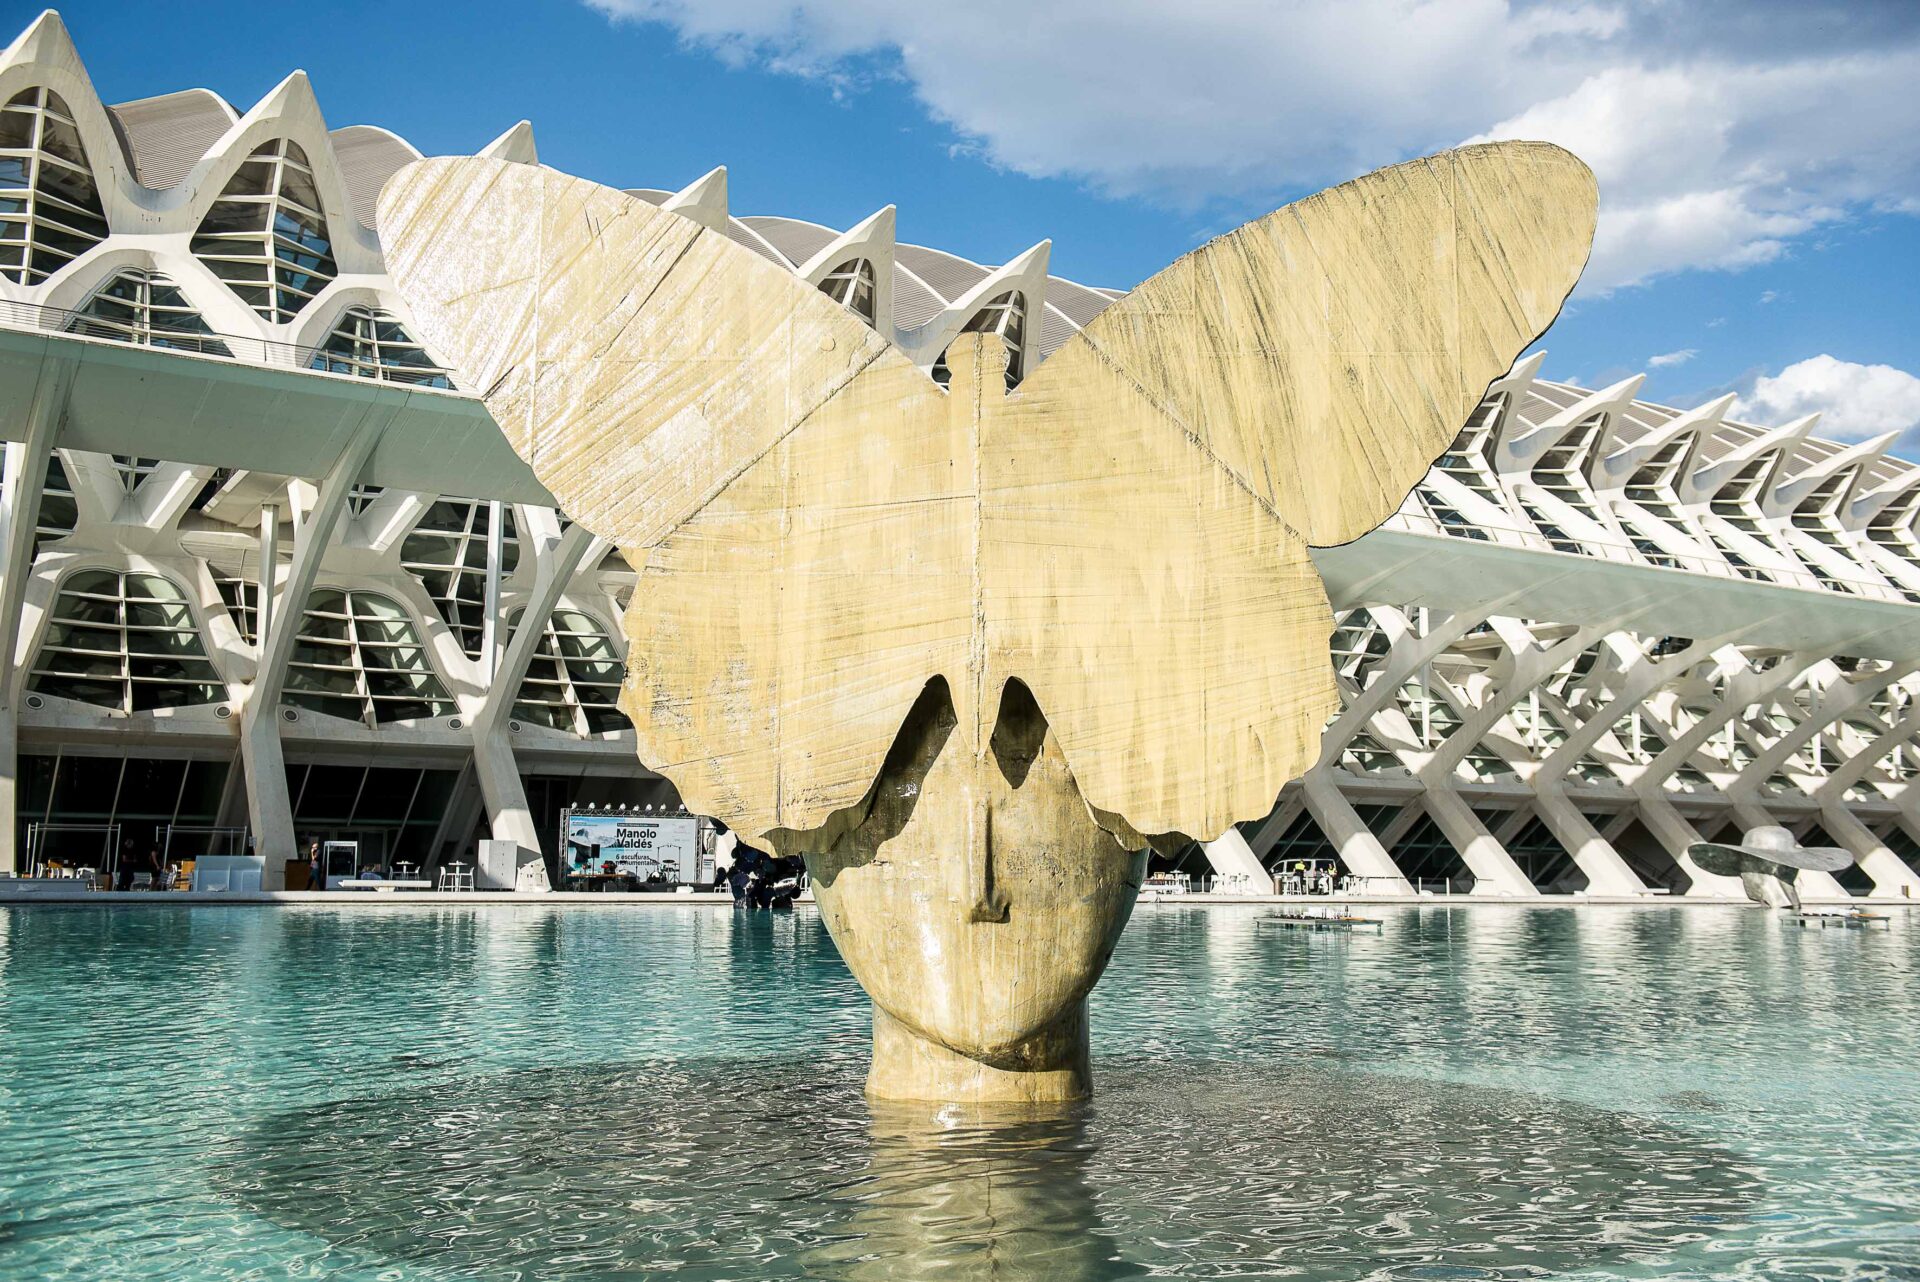 La mariposa | Manolo Valdés | Centro de Arte Hortensia Herrero